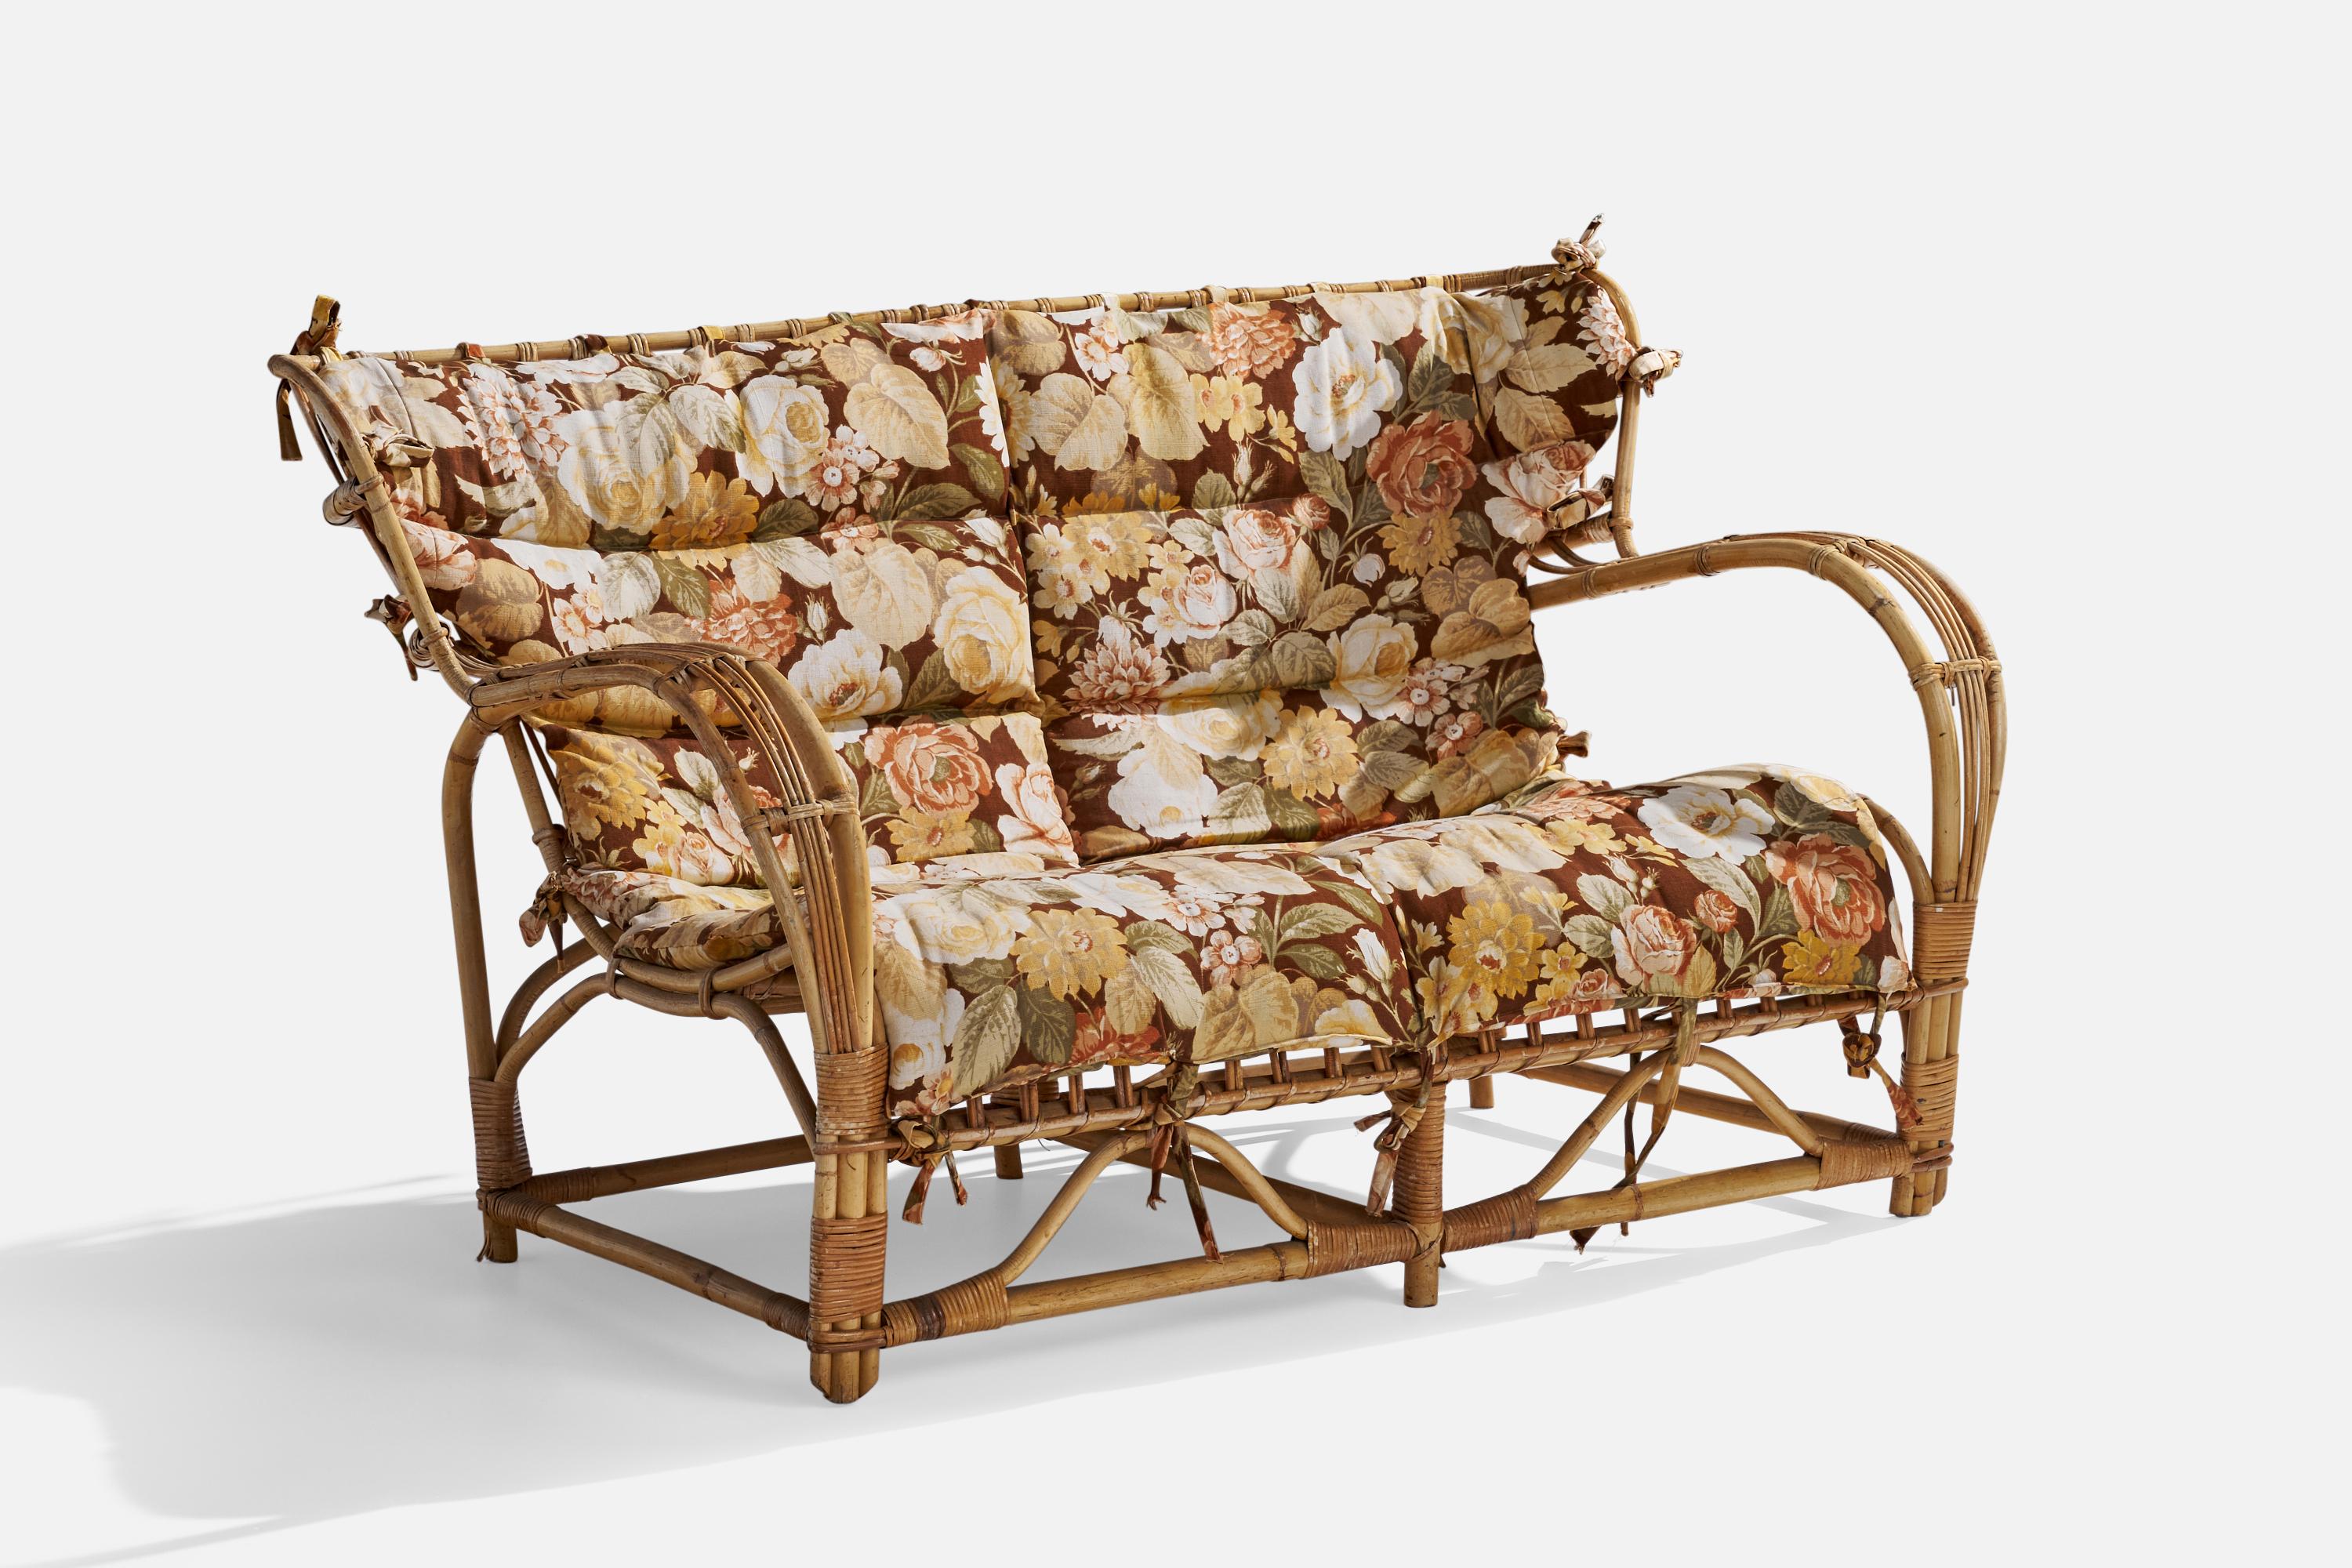 Sofa oder Sofagarnitur aus geformtem Bambus, Rattan und geblümtem Stoff, Viggo Boesen zugeschrieben, hergestellt in Schweden, um 1940.

Sitzhöhe 15,5